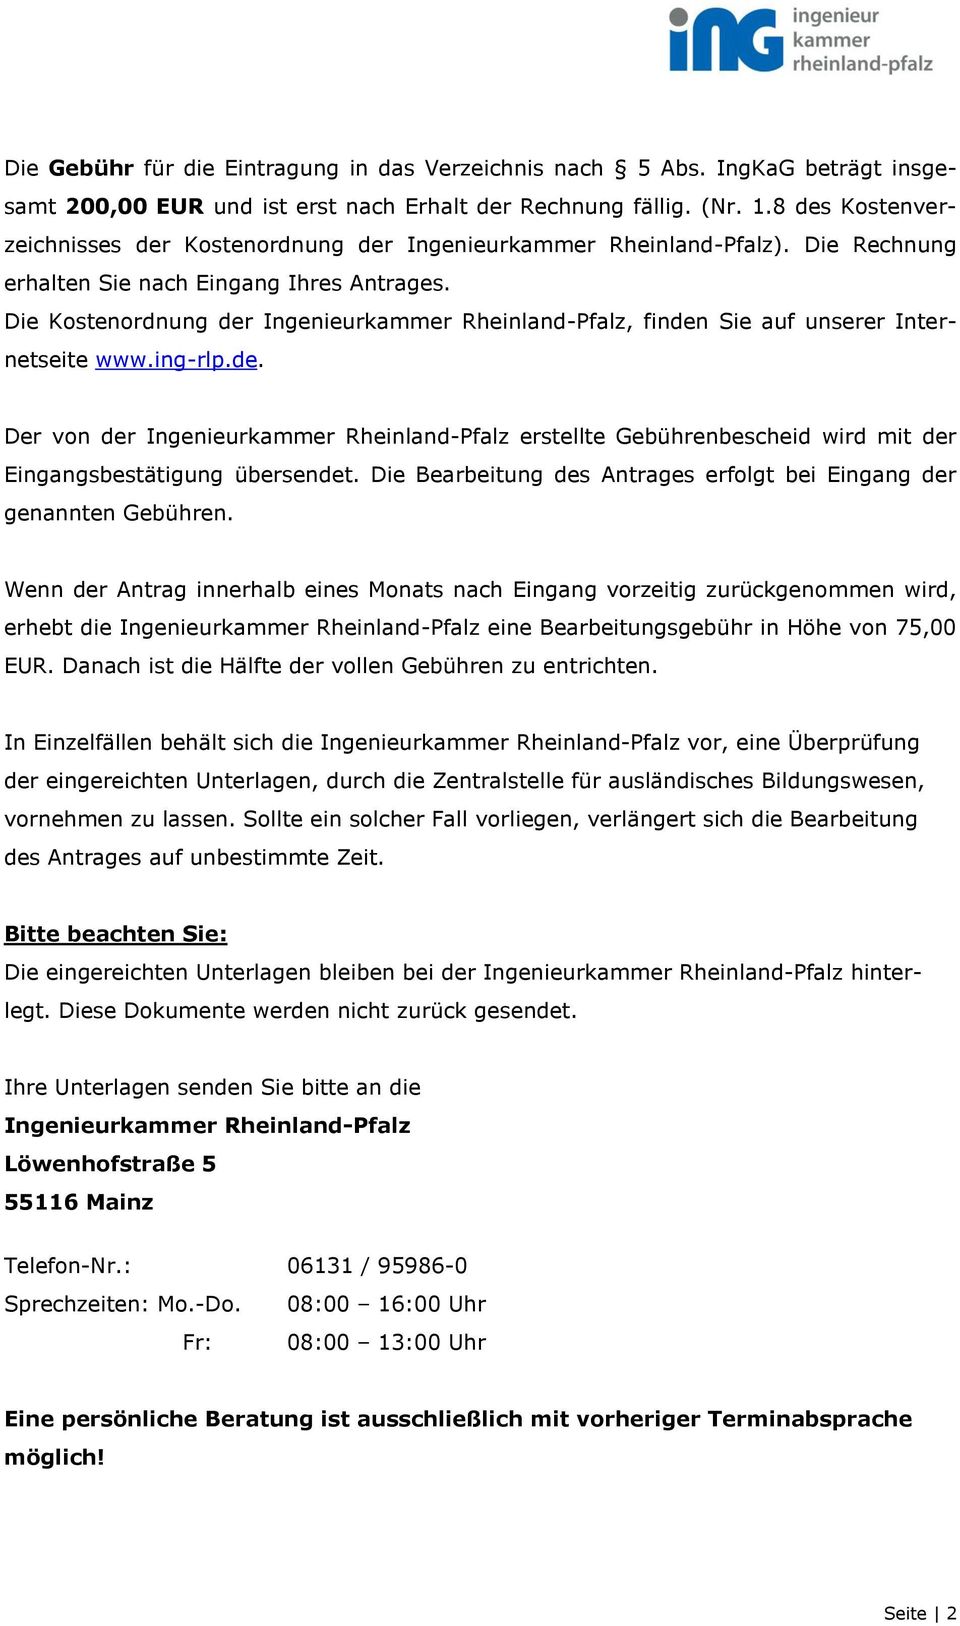 Die Kostenordnung der Ingenieurkammer Rheinland-Pfalz, finden Sie auf unserer Internetseite www.ing-rlp.de. Der von der Ingenieurkammer Rheinland-Pfalz erstellte Gebührenbescheid wird mit der Eingangsbestätigung übersendet.